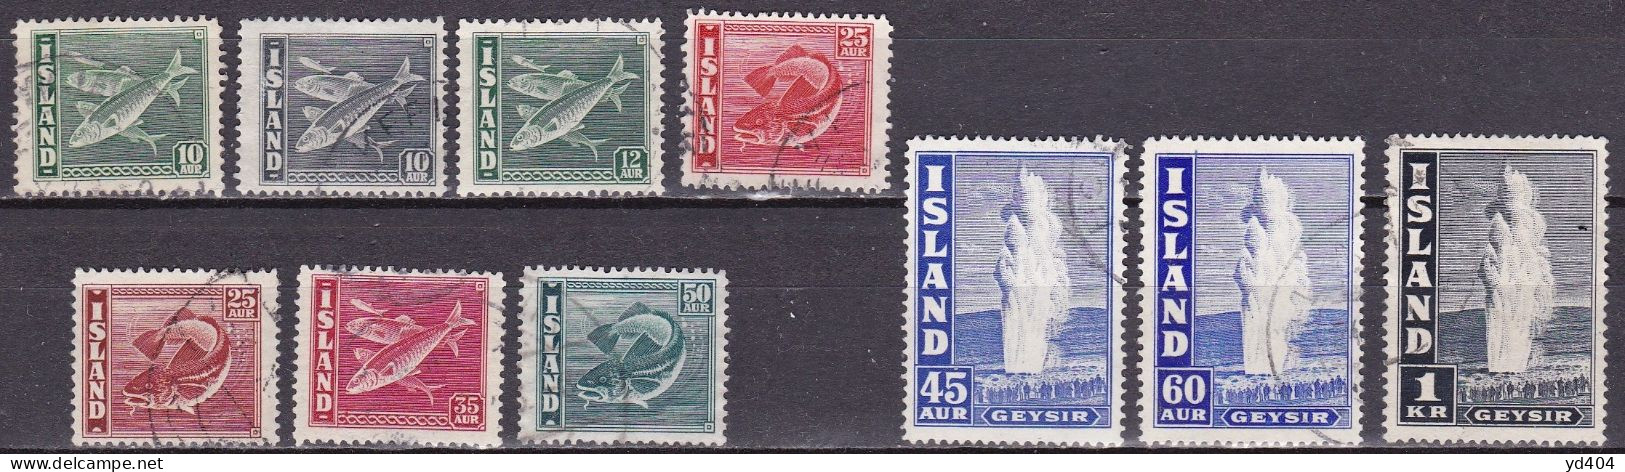 IS042 – ISLANDE – ICELAND – 1940-45 – FISHES & GEYSER – Y&T # 189/198a USED - Usati